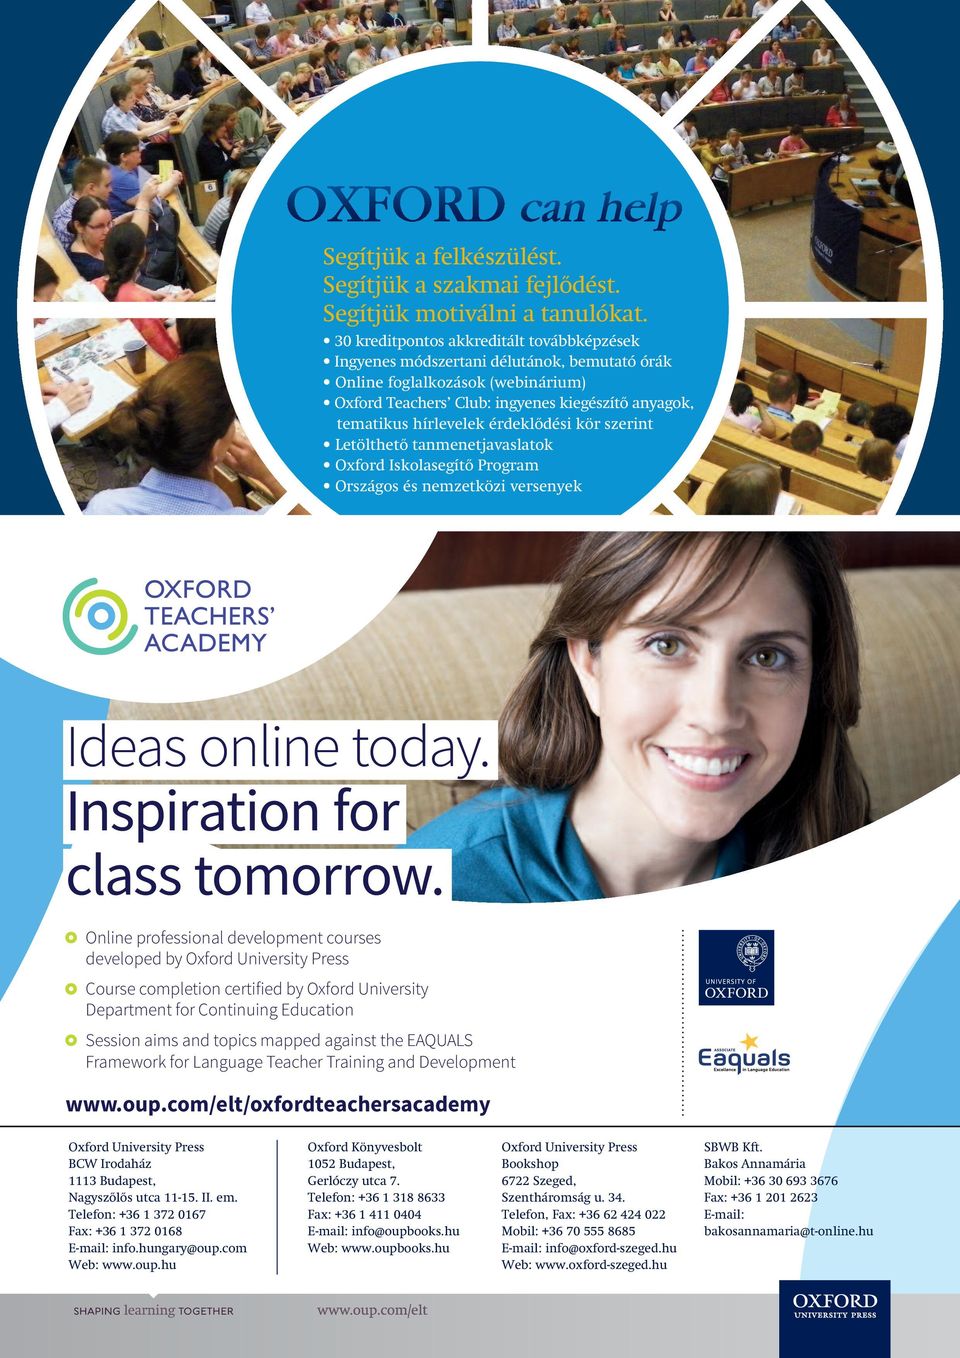 érdeklôdési kör szerint Letölthetô tanmenetjavaslatok Oxford Iskolasegítô Program Országos és nemzetközi versenyek Ideas online today. Inspiration for class tomorrow.